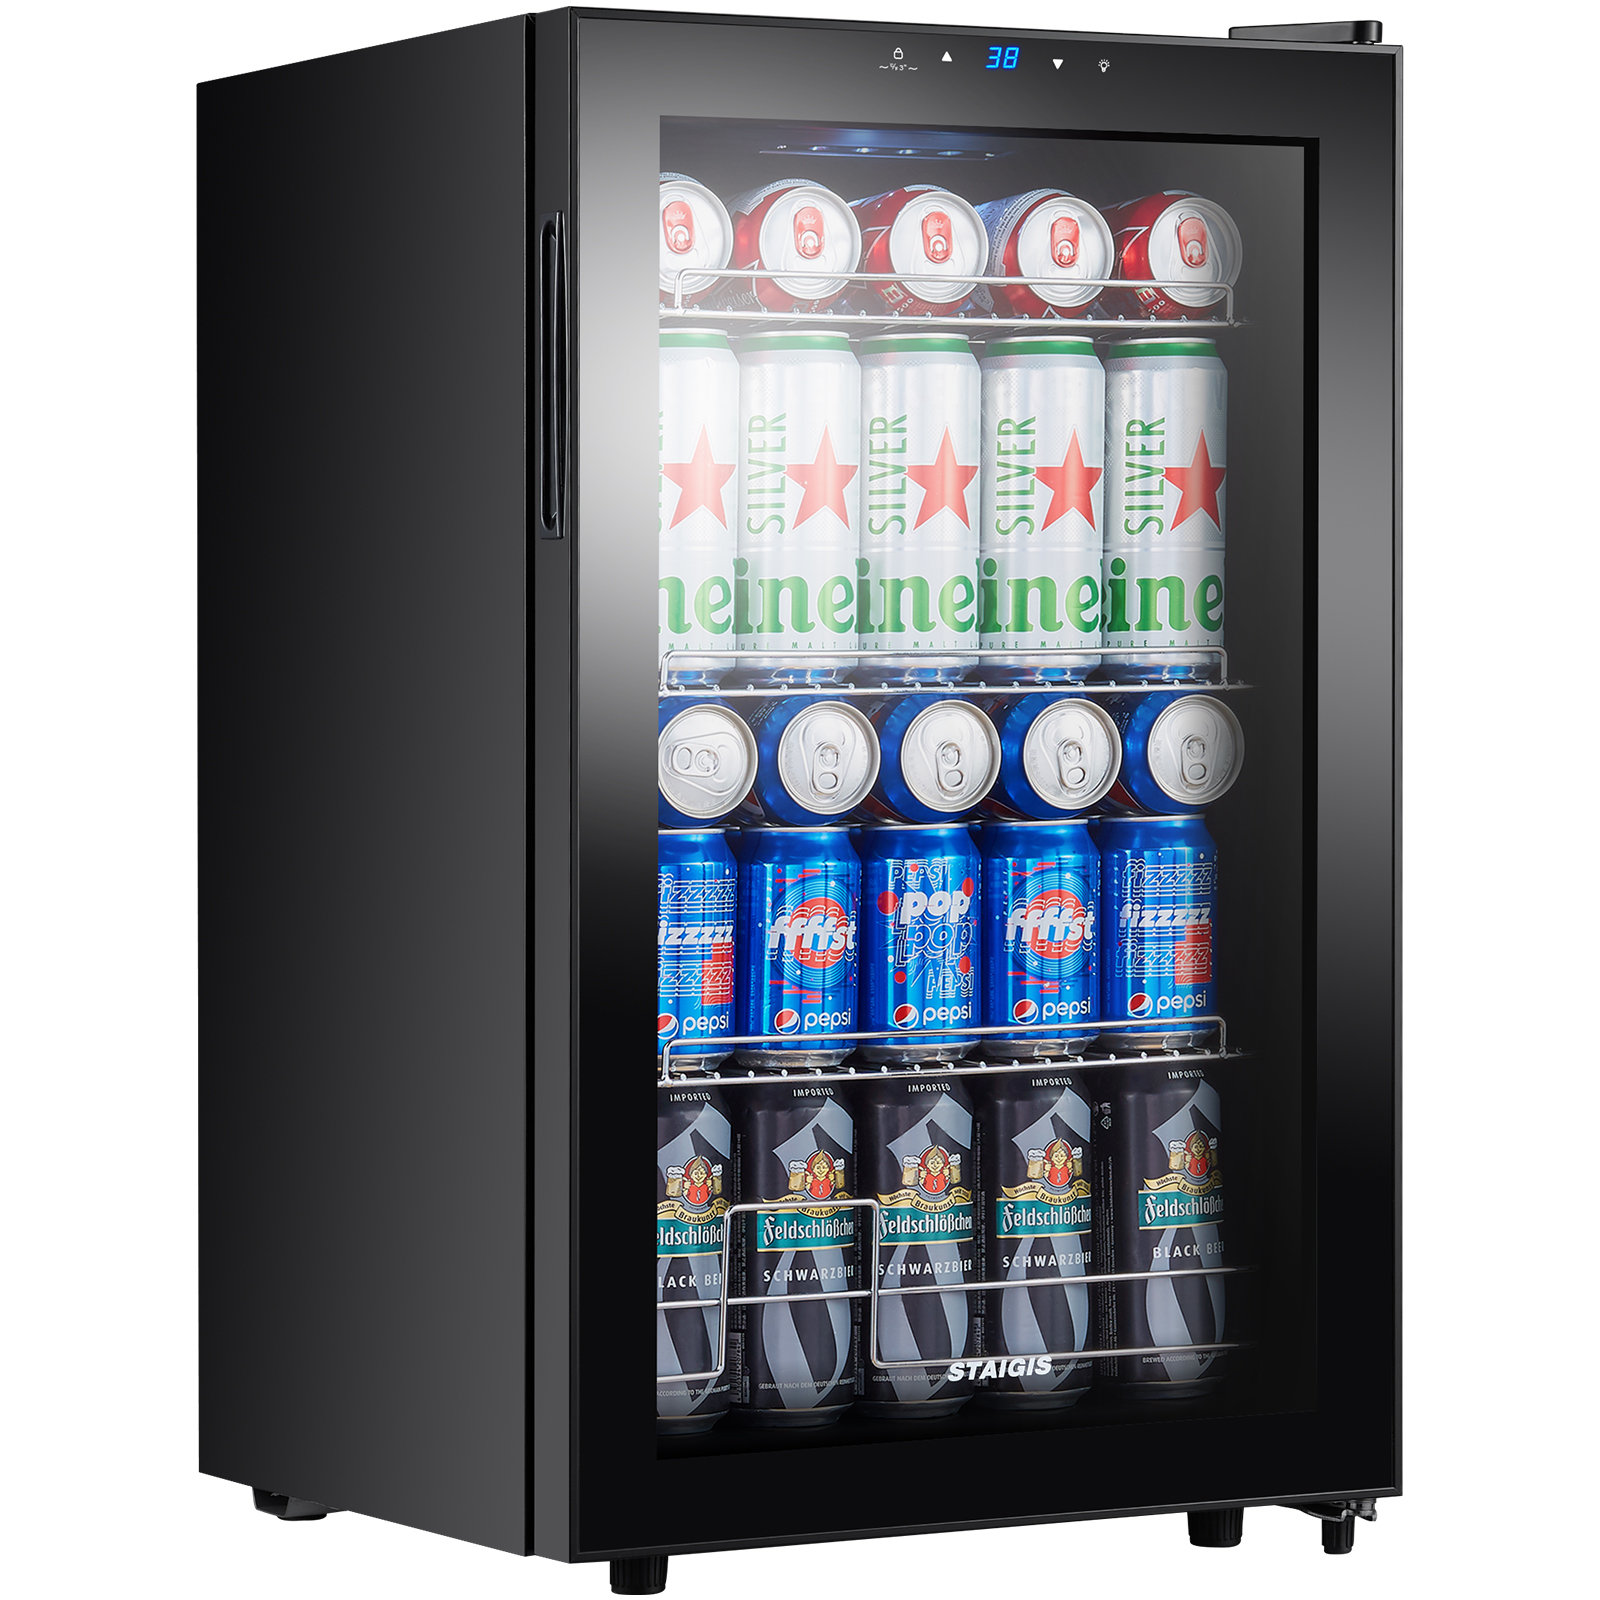 https://assets.wfcdn.com/im/5270968/compr-r85/2304/230458990/staigis-25-cubic-feet-freestanding-mini-fridge.jpg